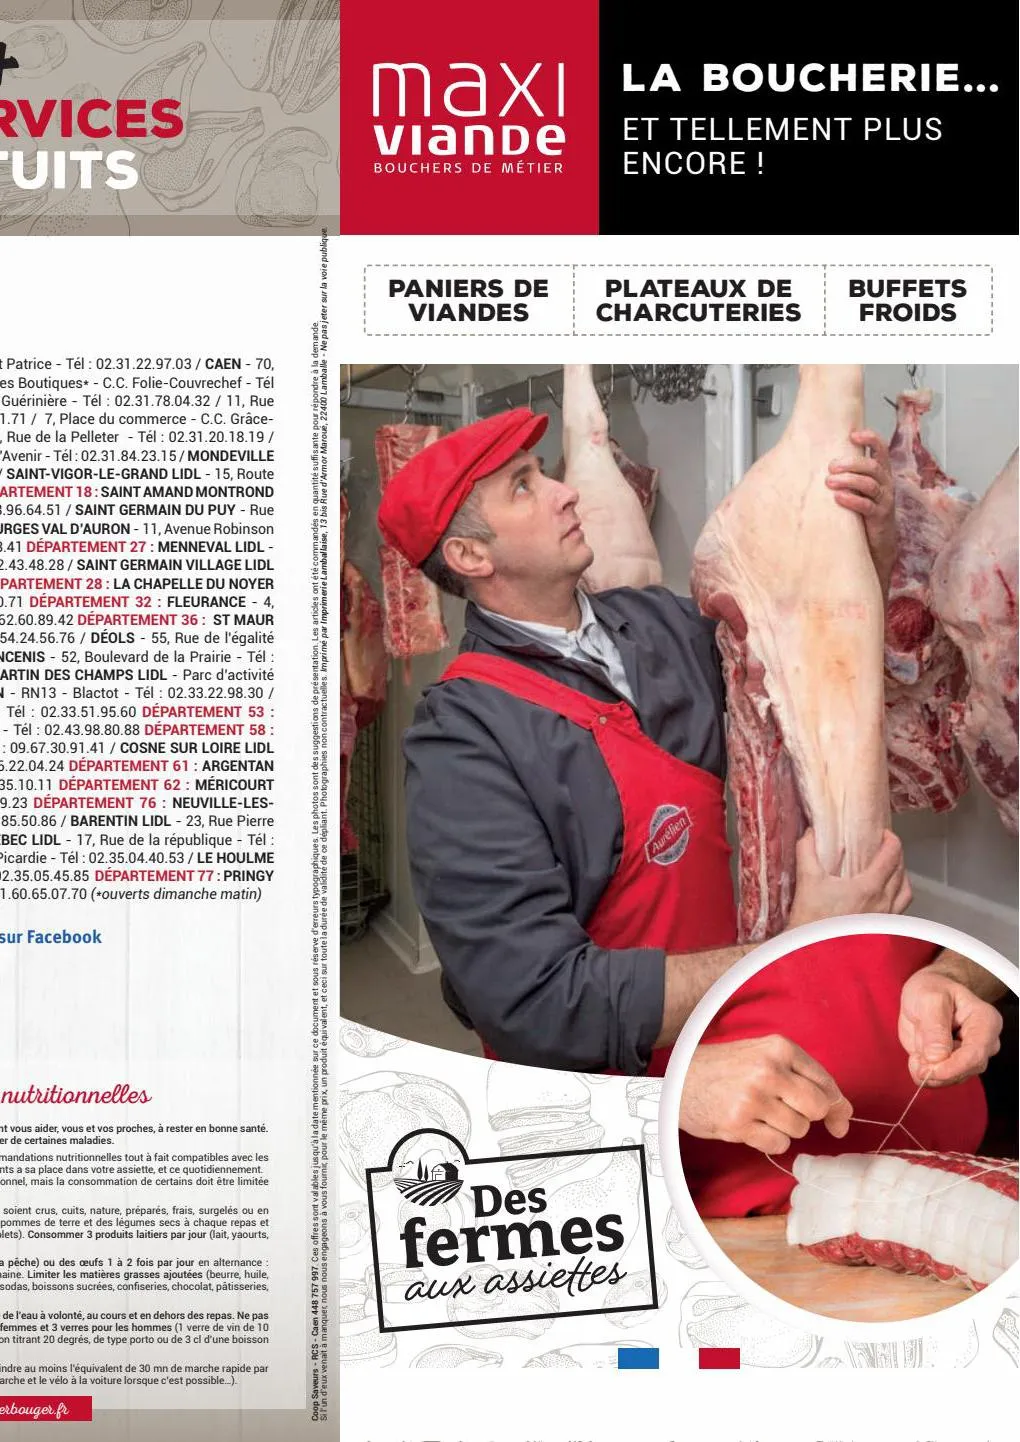 Catalogue Nos colis et plateaux de viandes, page 00001